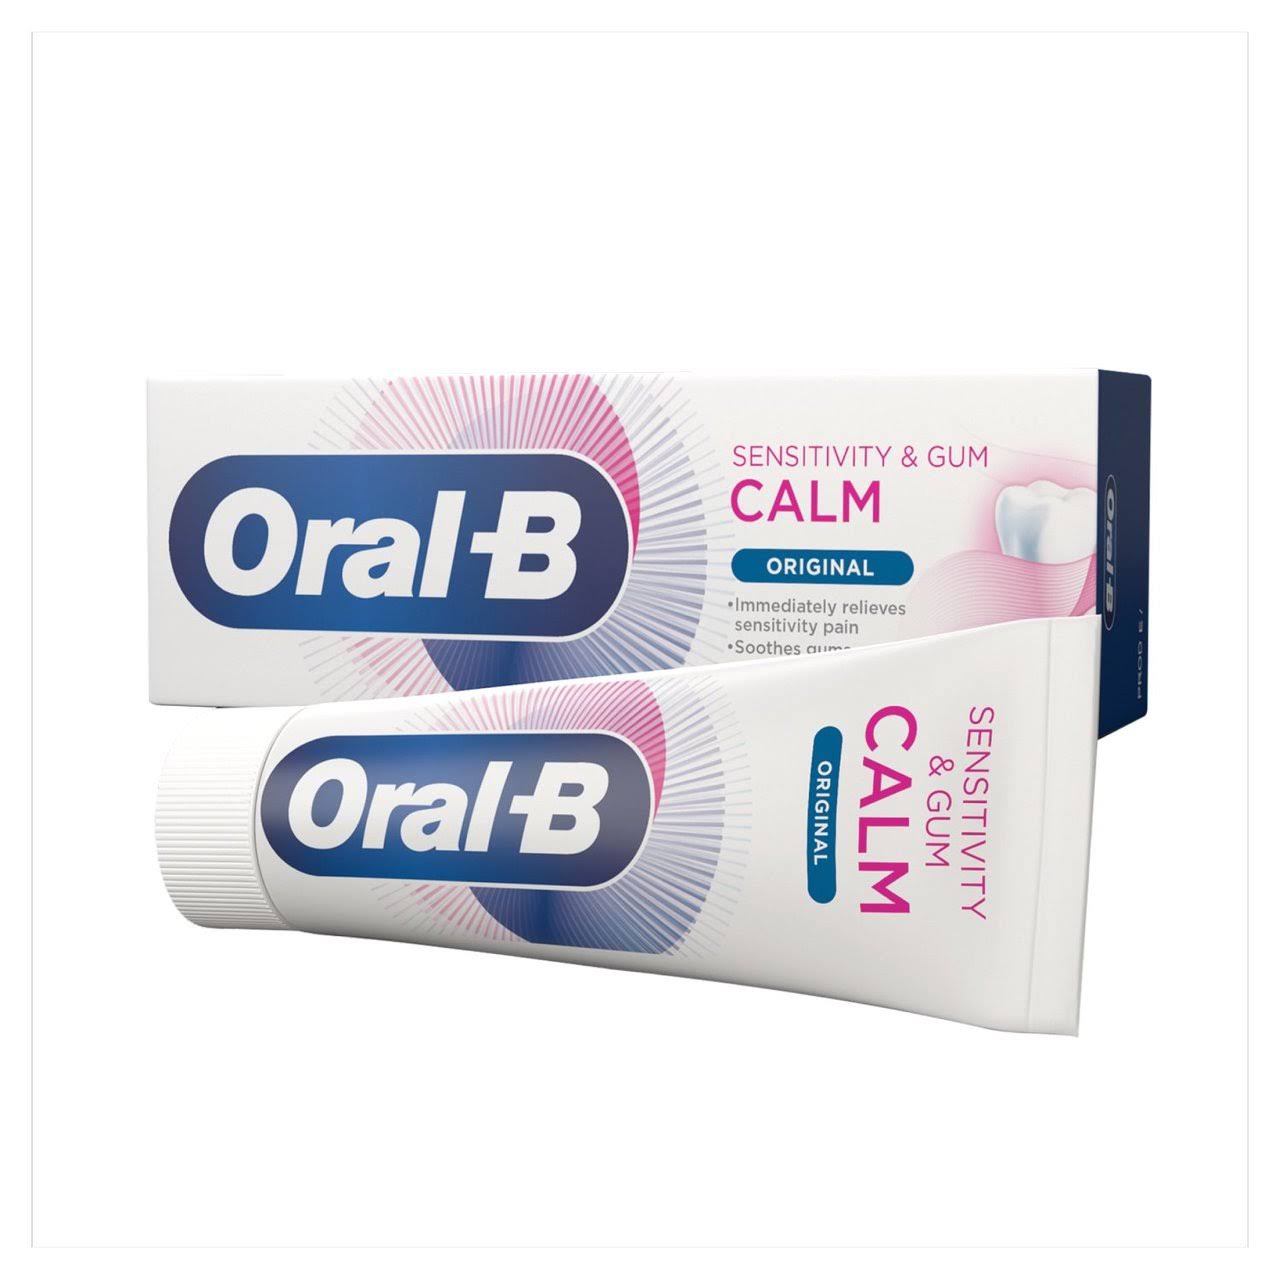 Oral-B Sensitivity & Gum Calm Original Toothpaste 75 ml